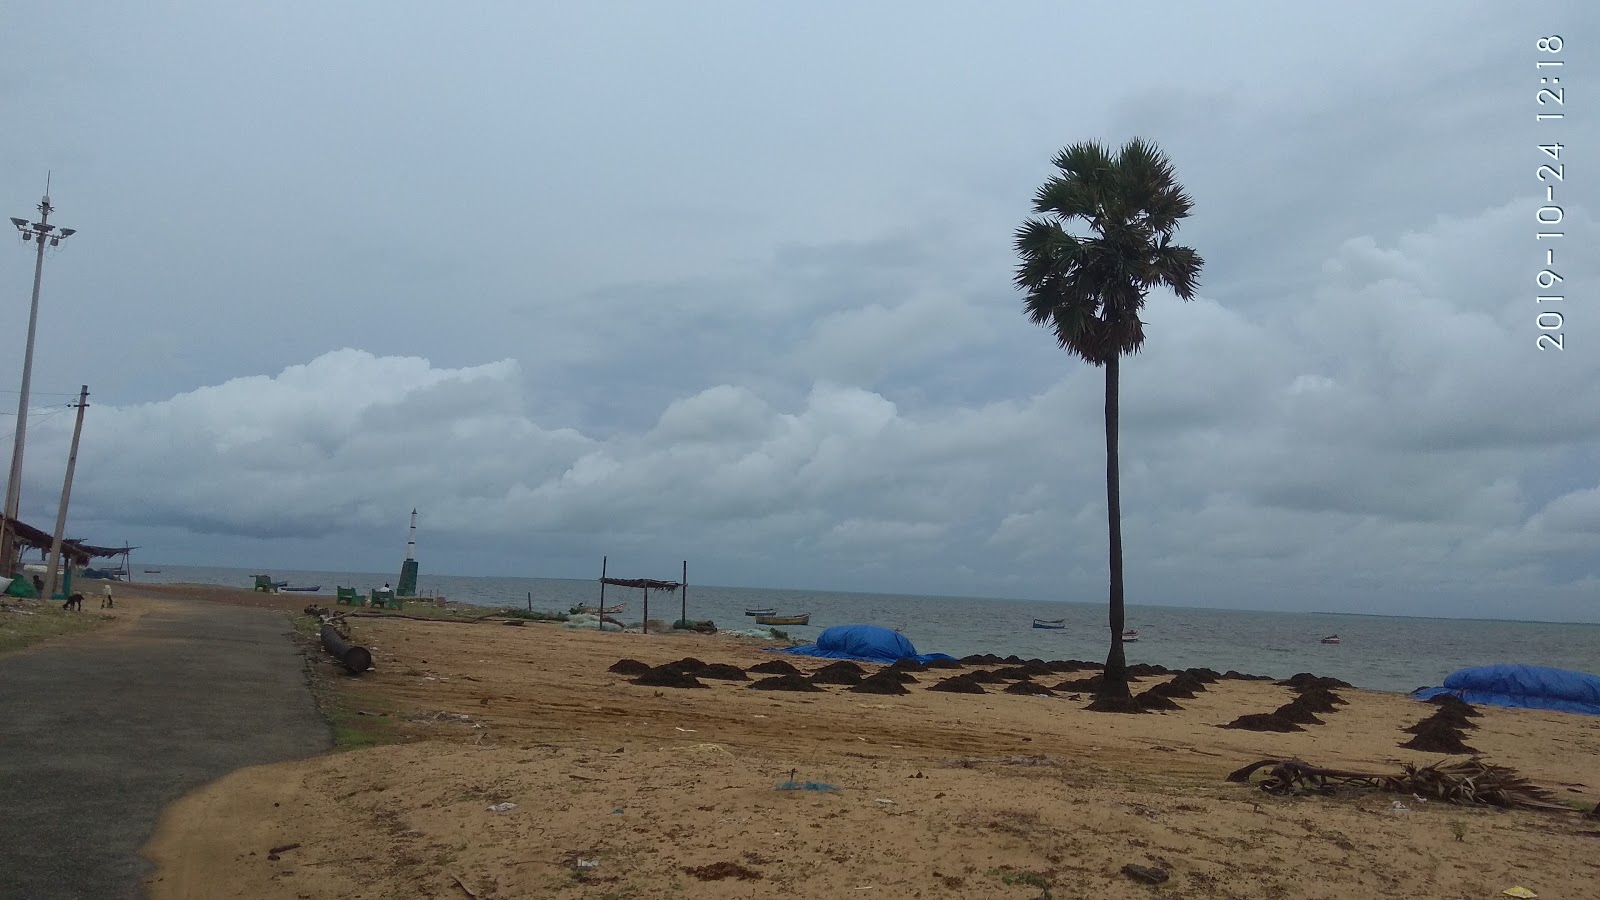 Foto de Seeni Appa Dargha Beach - lugar popular entre los conocedores del relax